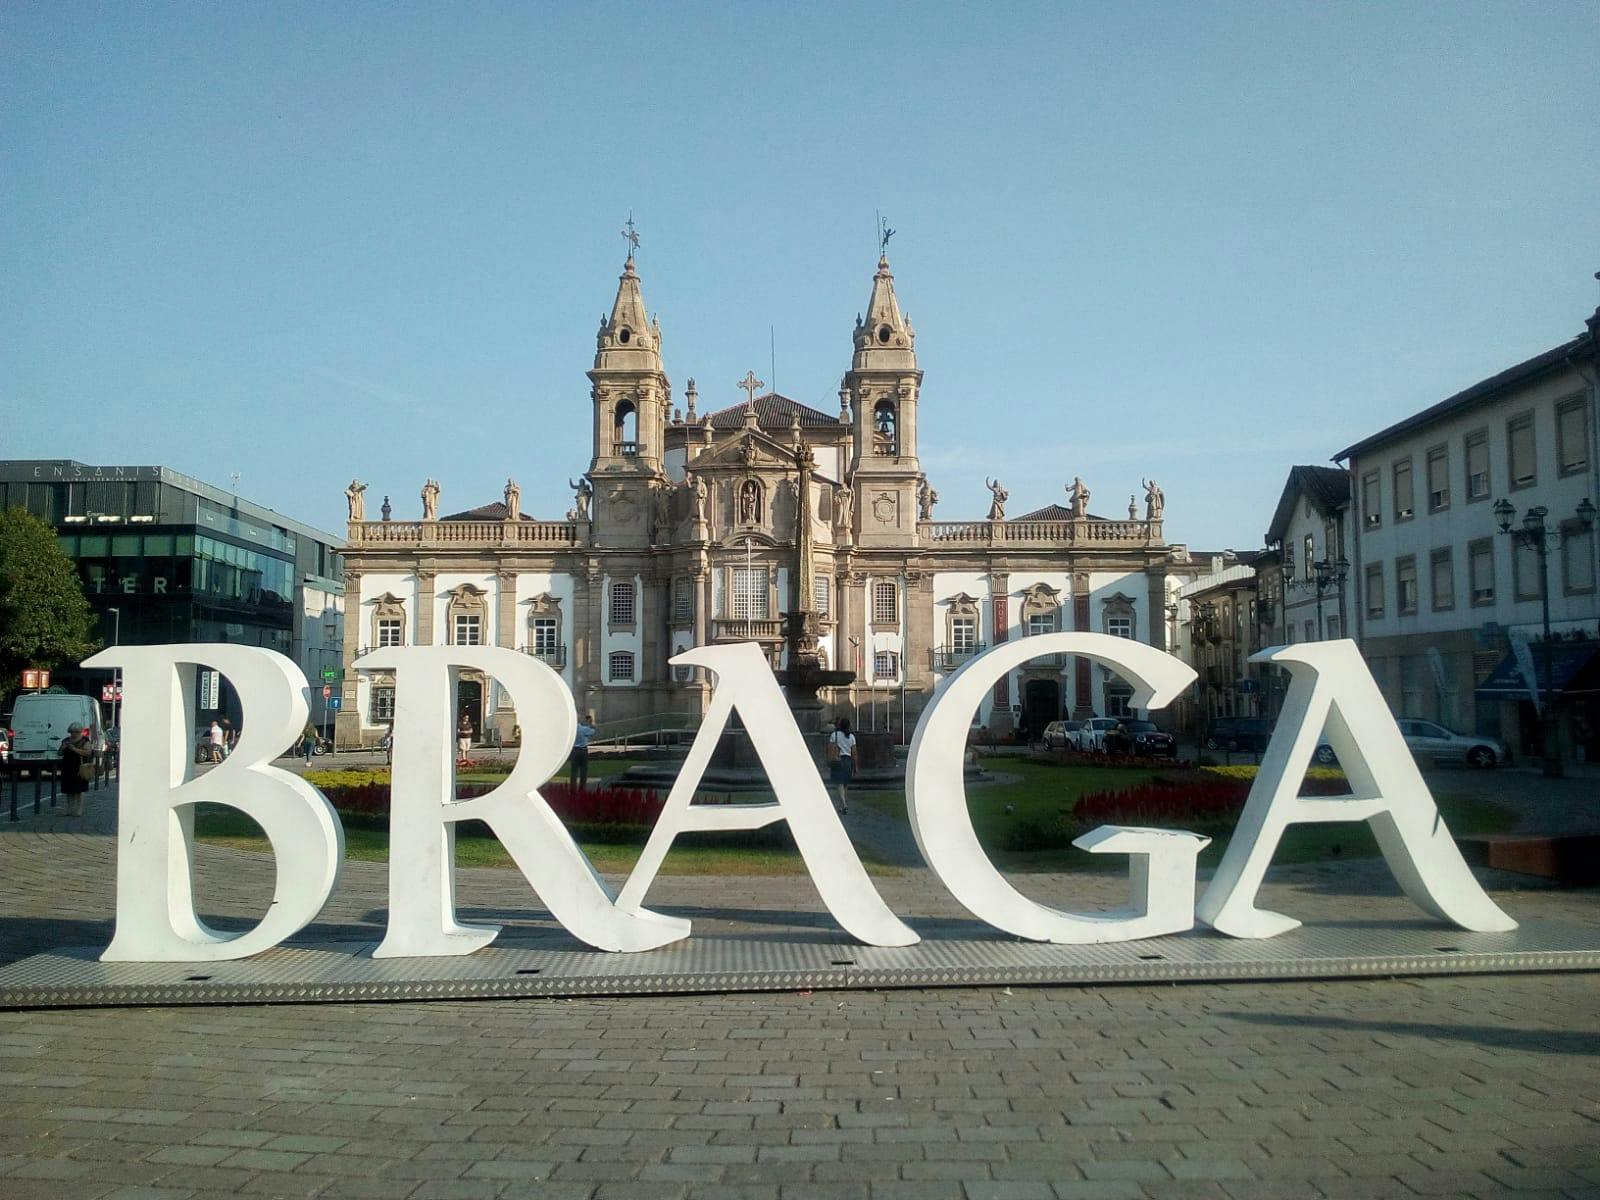 Braga und Guimarães private Tour von Porto